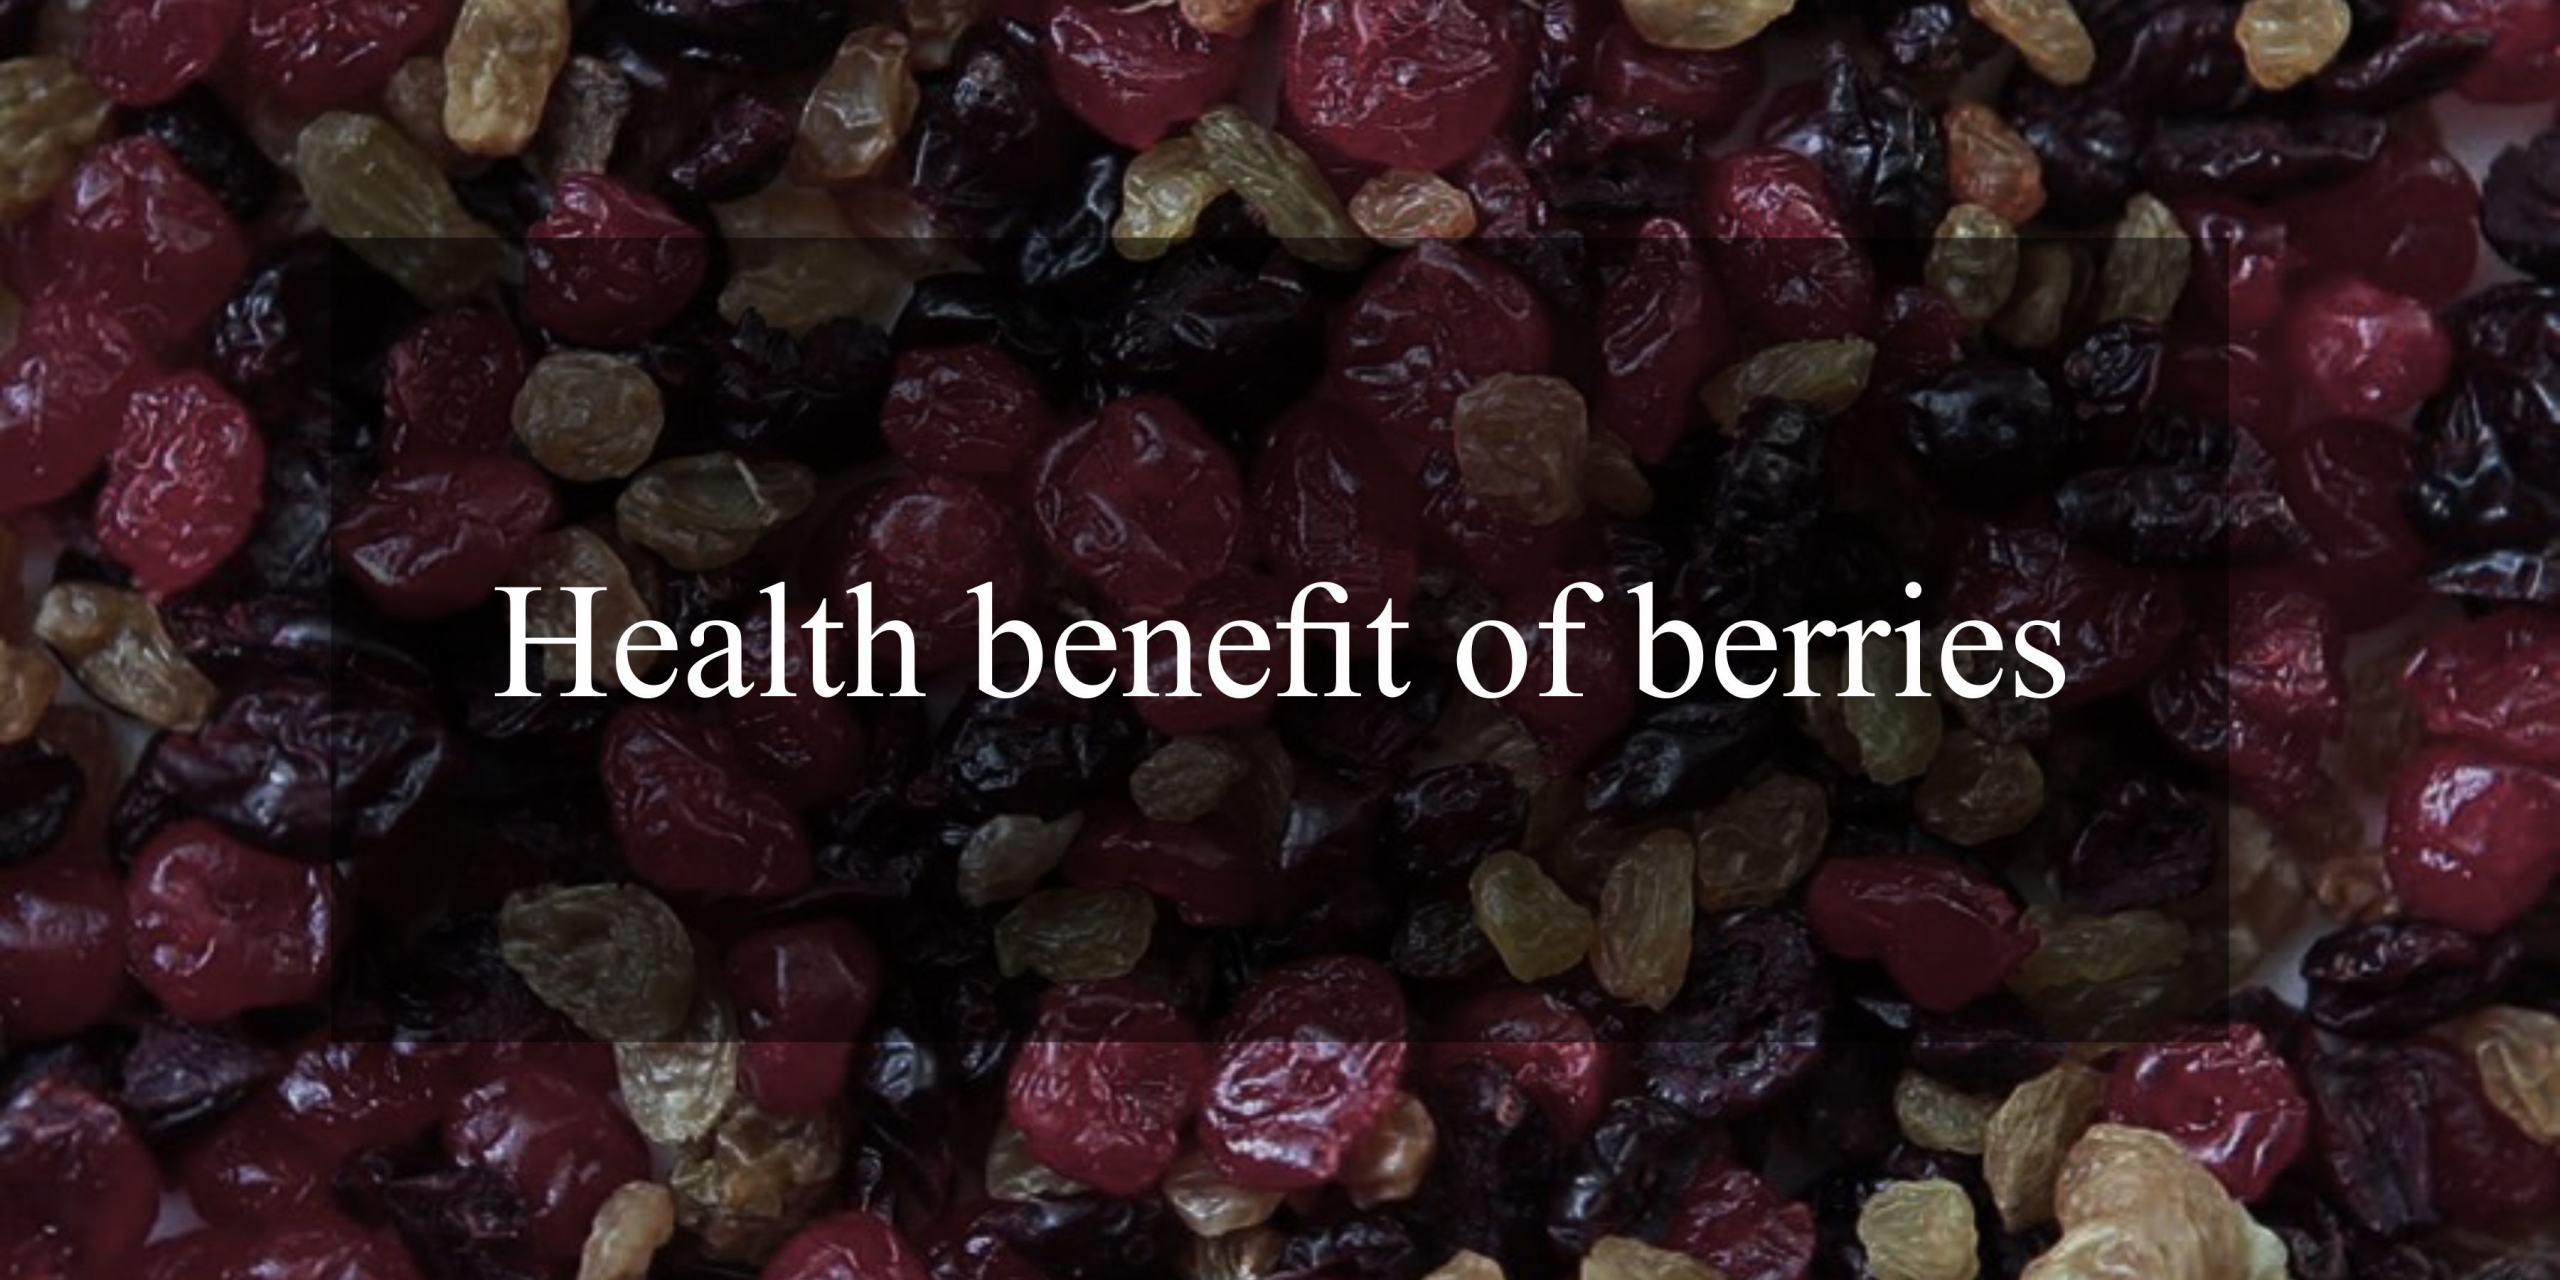 Health Benefits Of berries